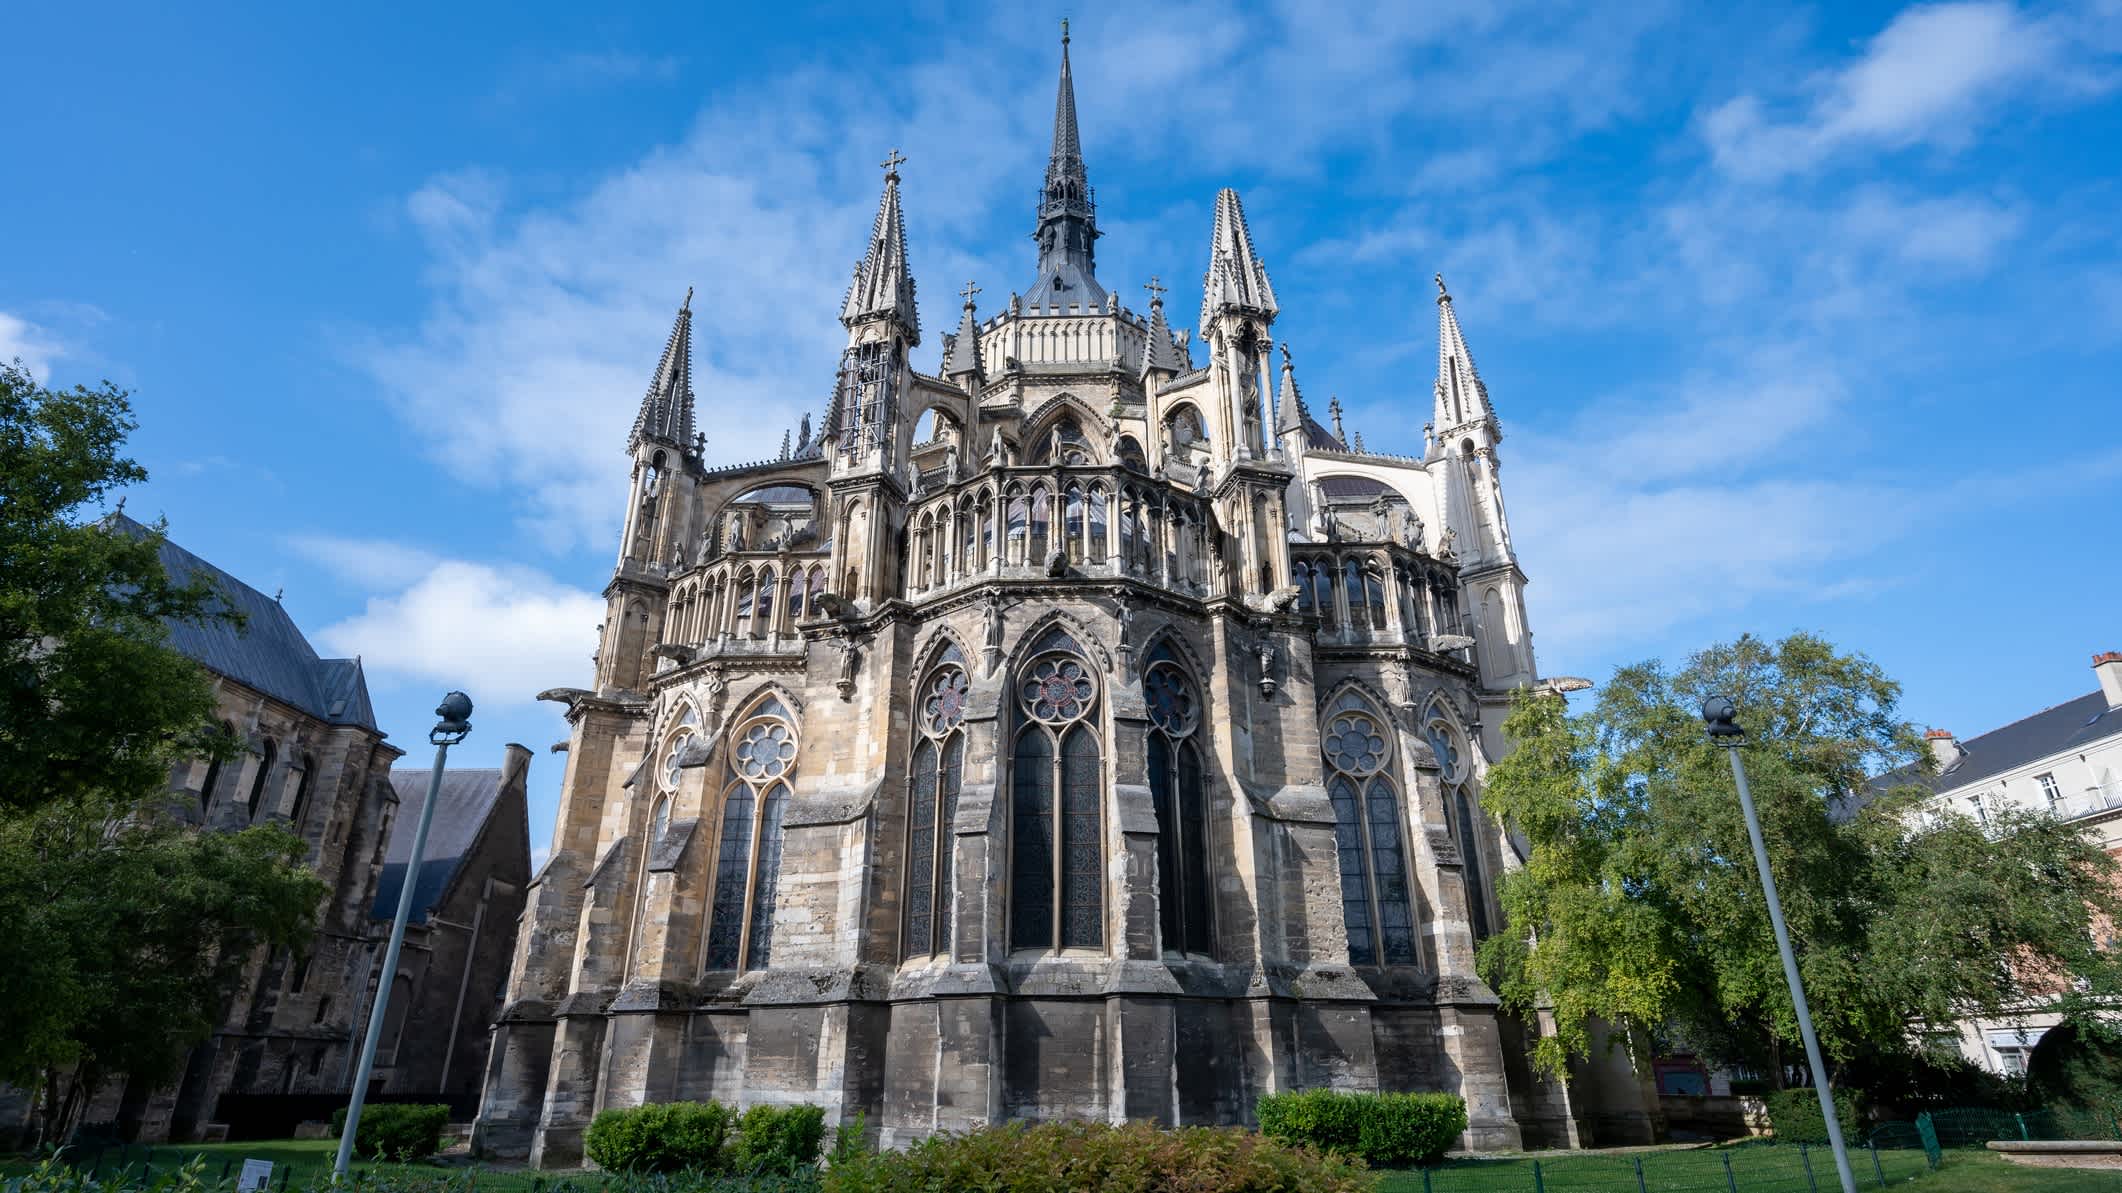  Cathédrale gothique catholique romaine Notre-Dame dans la ville de Reims, France